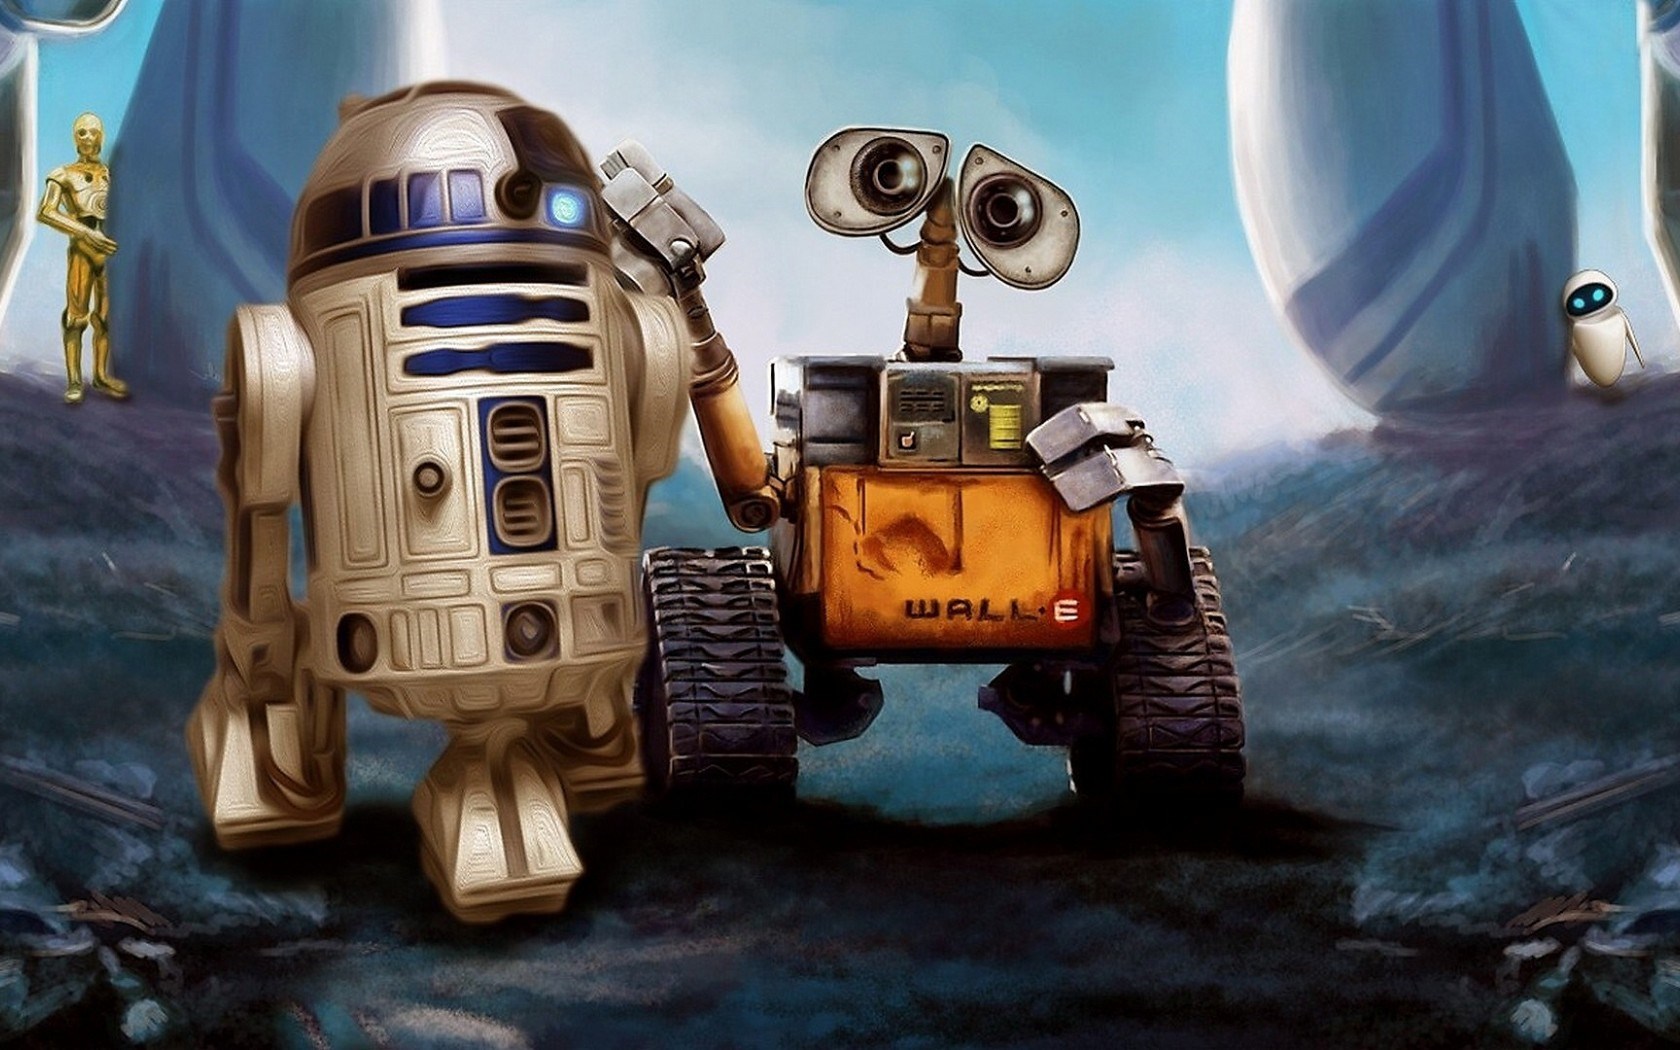 Star Wars Robot Background - 1680x1050 Wallpaper 